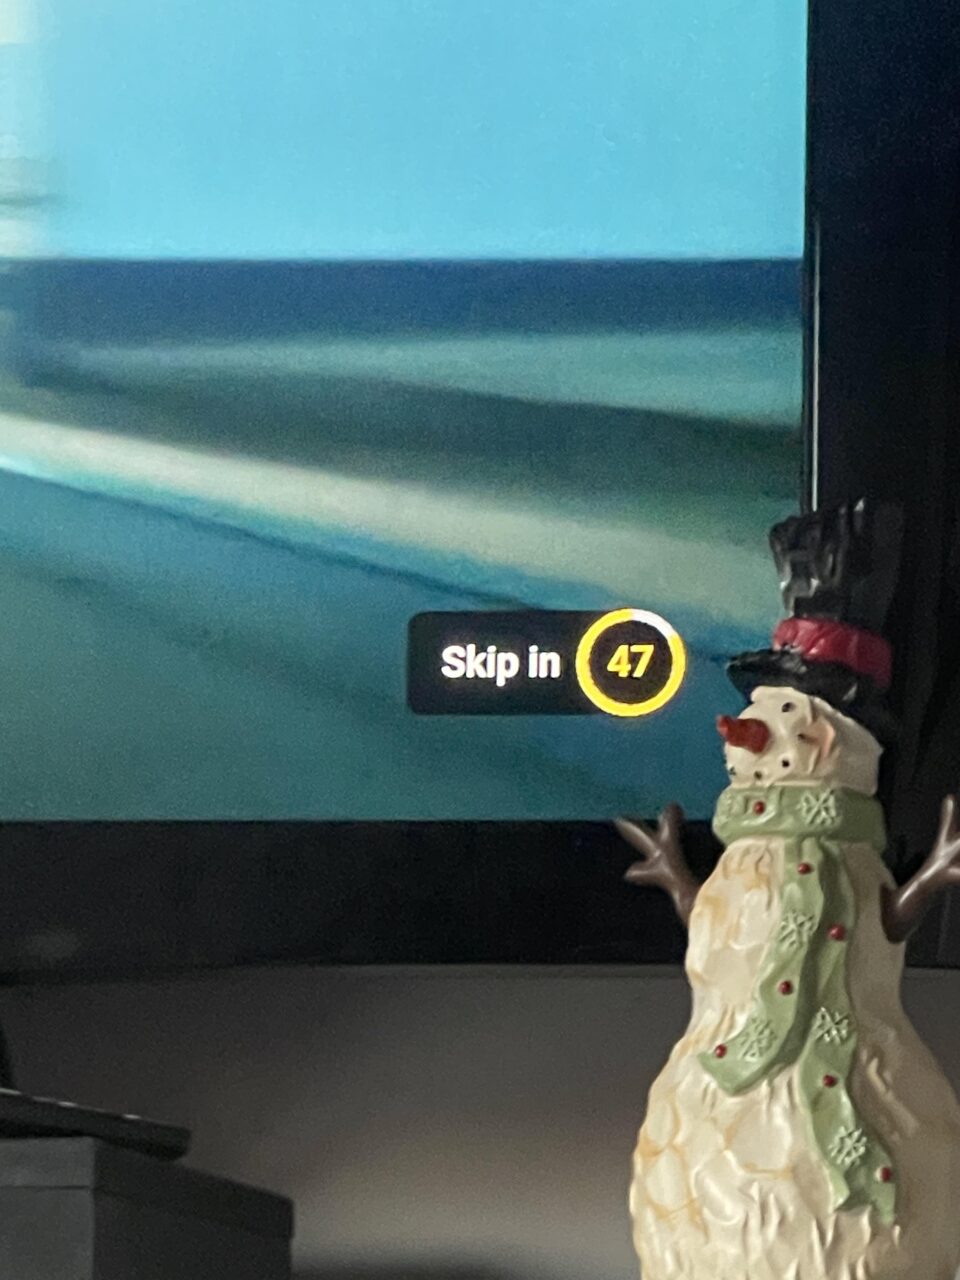 Figurka bałwana stoi przed ekranem telewizora z wyświetlaczem "Skip in 47" w prawym górnym rogu w usłudze Google, YouTube.